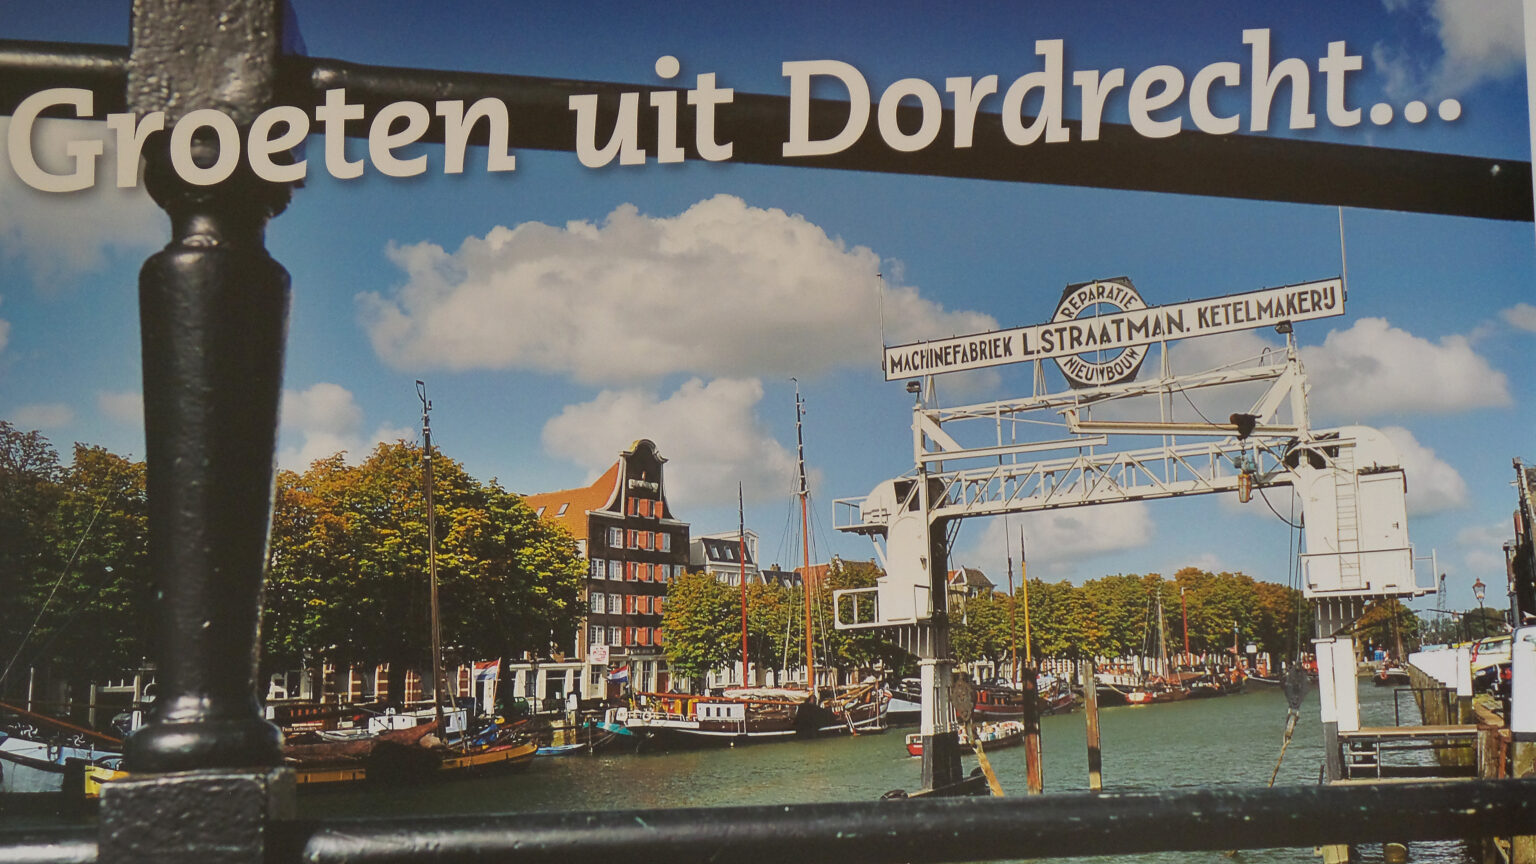 Je bekijkt nu Dordrecht met de camper